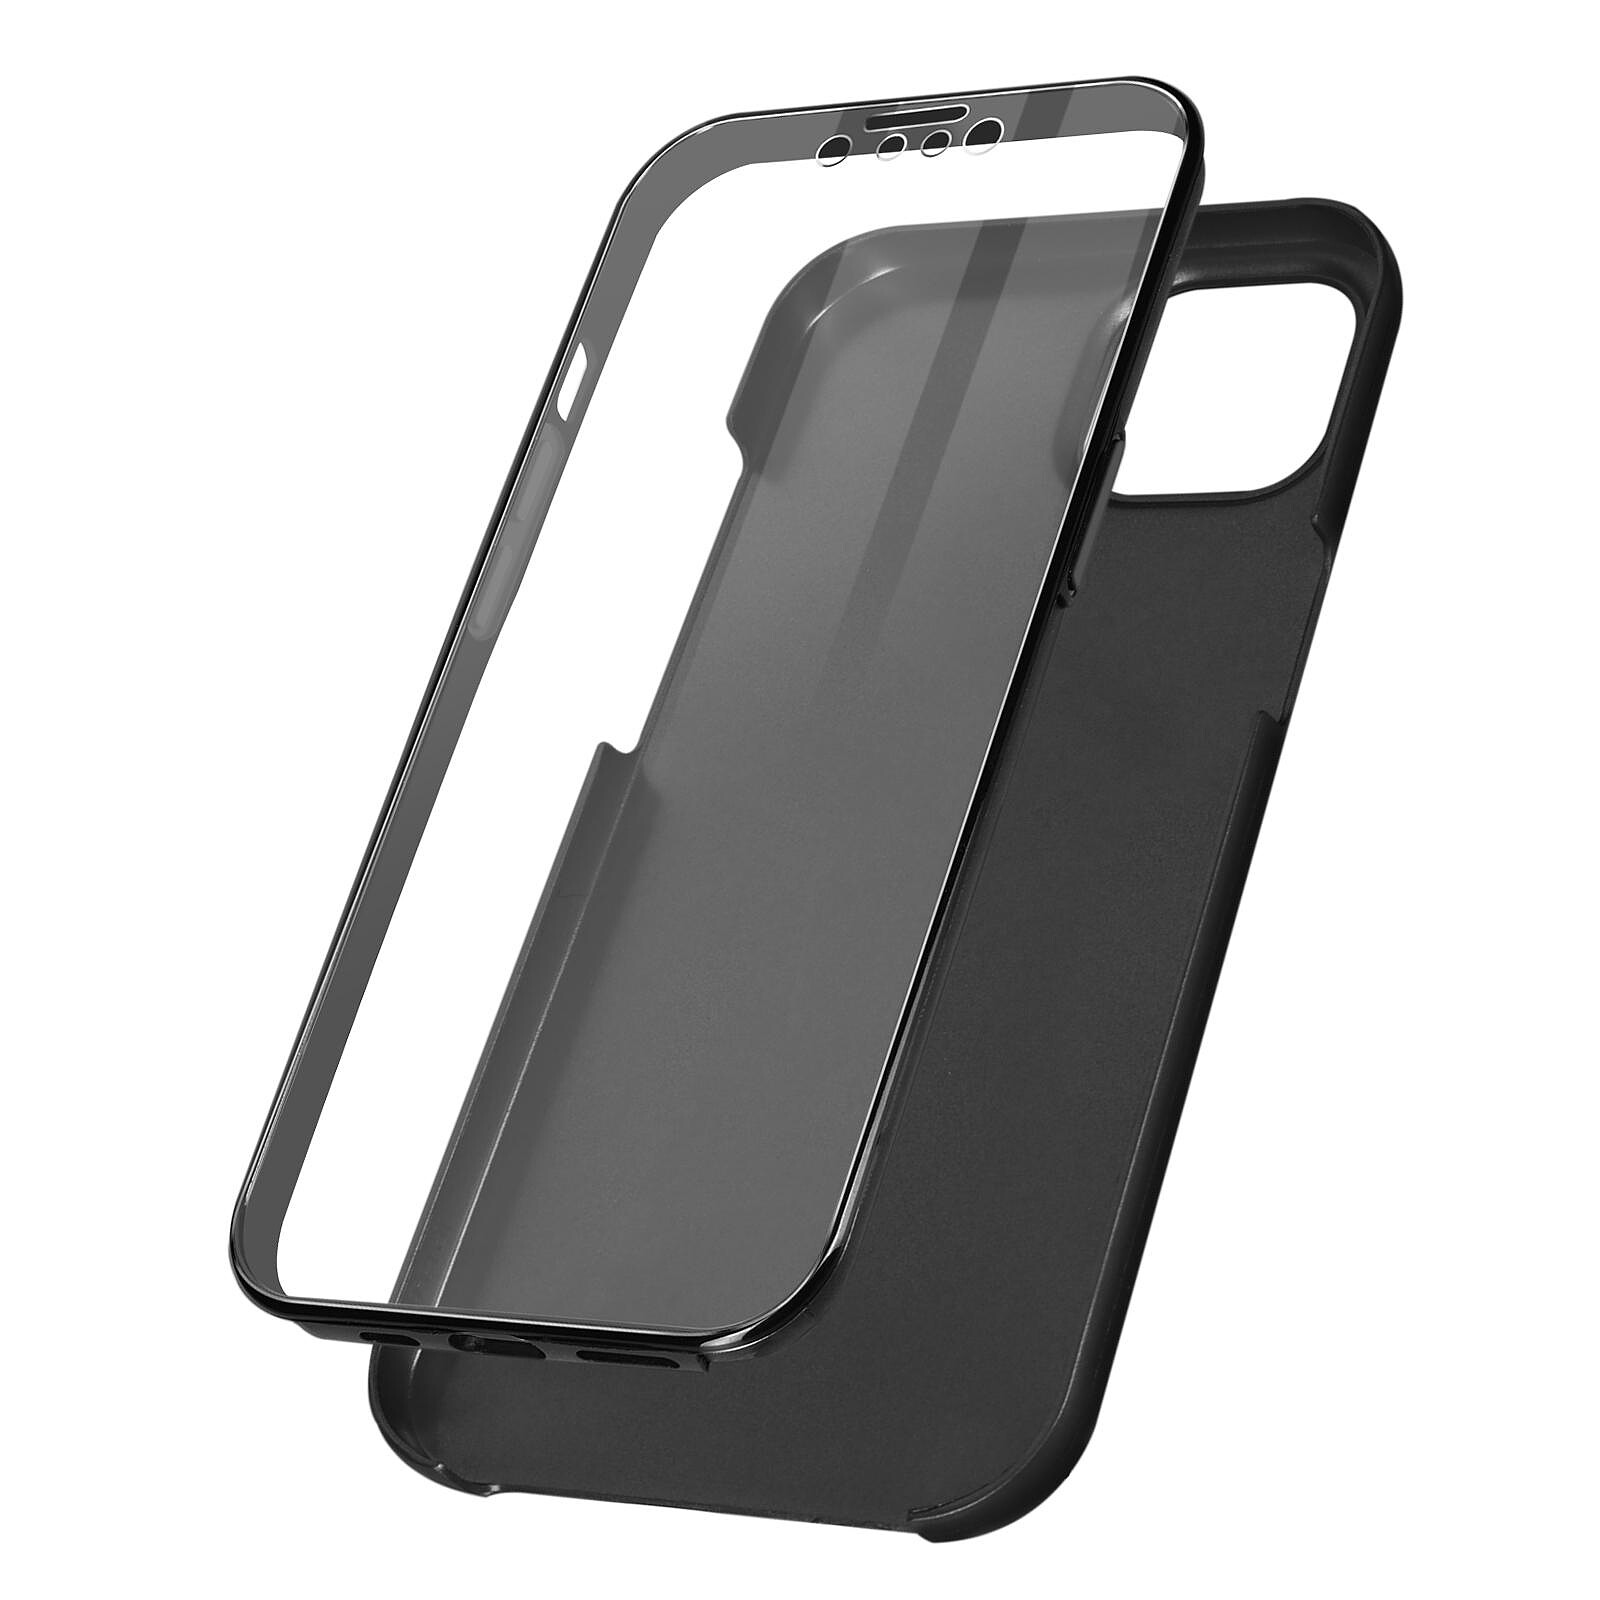 Coque Protection iPhone 13 Mini Intégrale Avant + Arrière Rigide,  Soft-touch Metallique - Noir